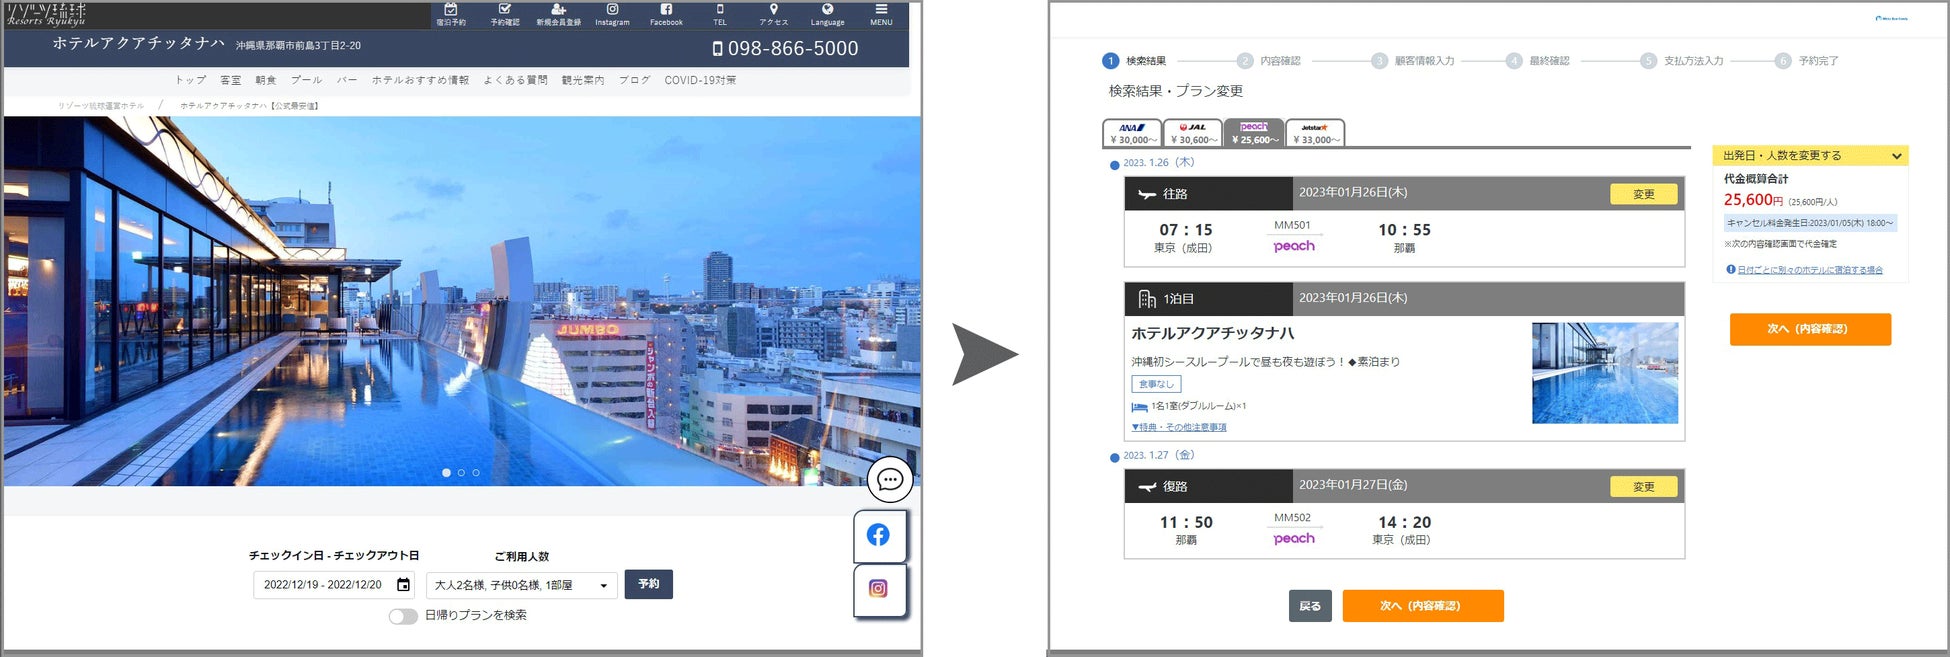 データビークル・ Vpon JAPANが大阪観光局の観光DXの支援を開始大阪府域の観光施策強化にデータサイエンスの手法を新規導入！